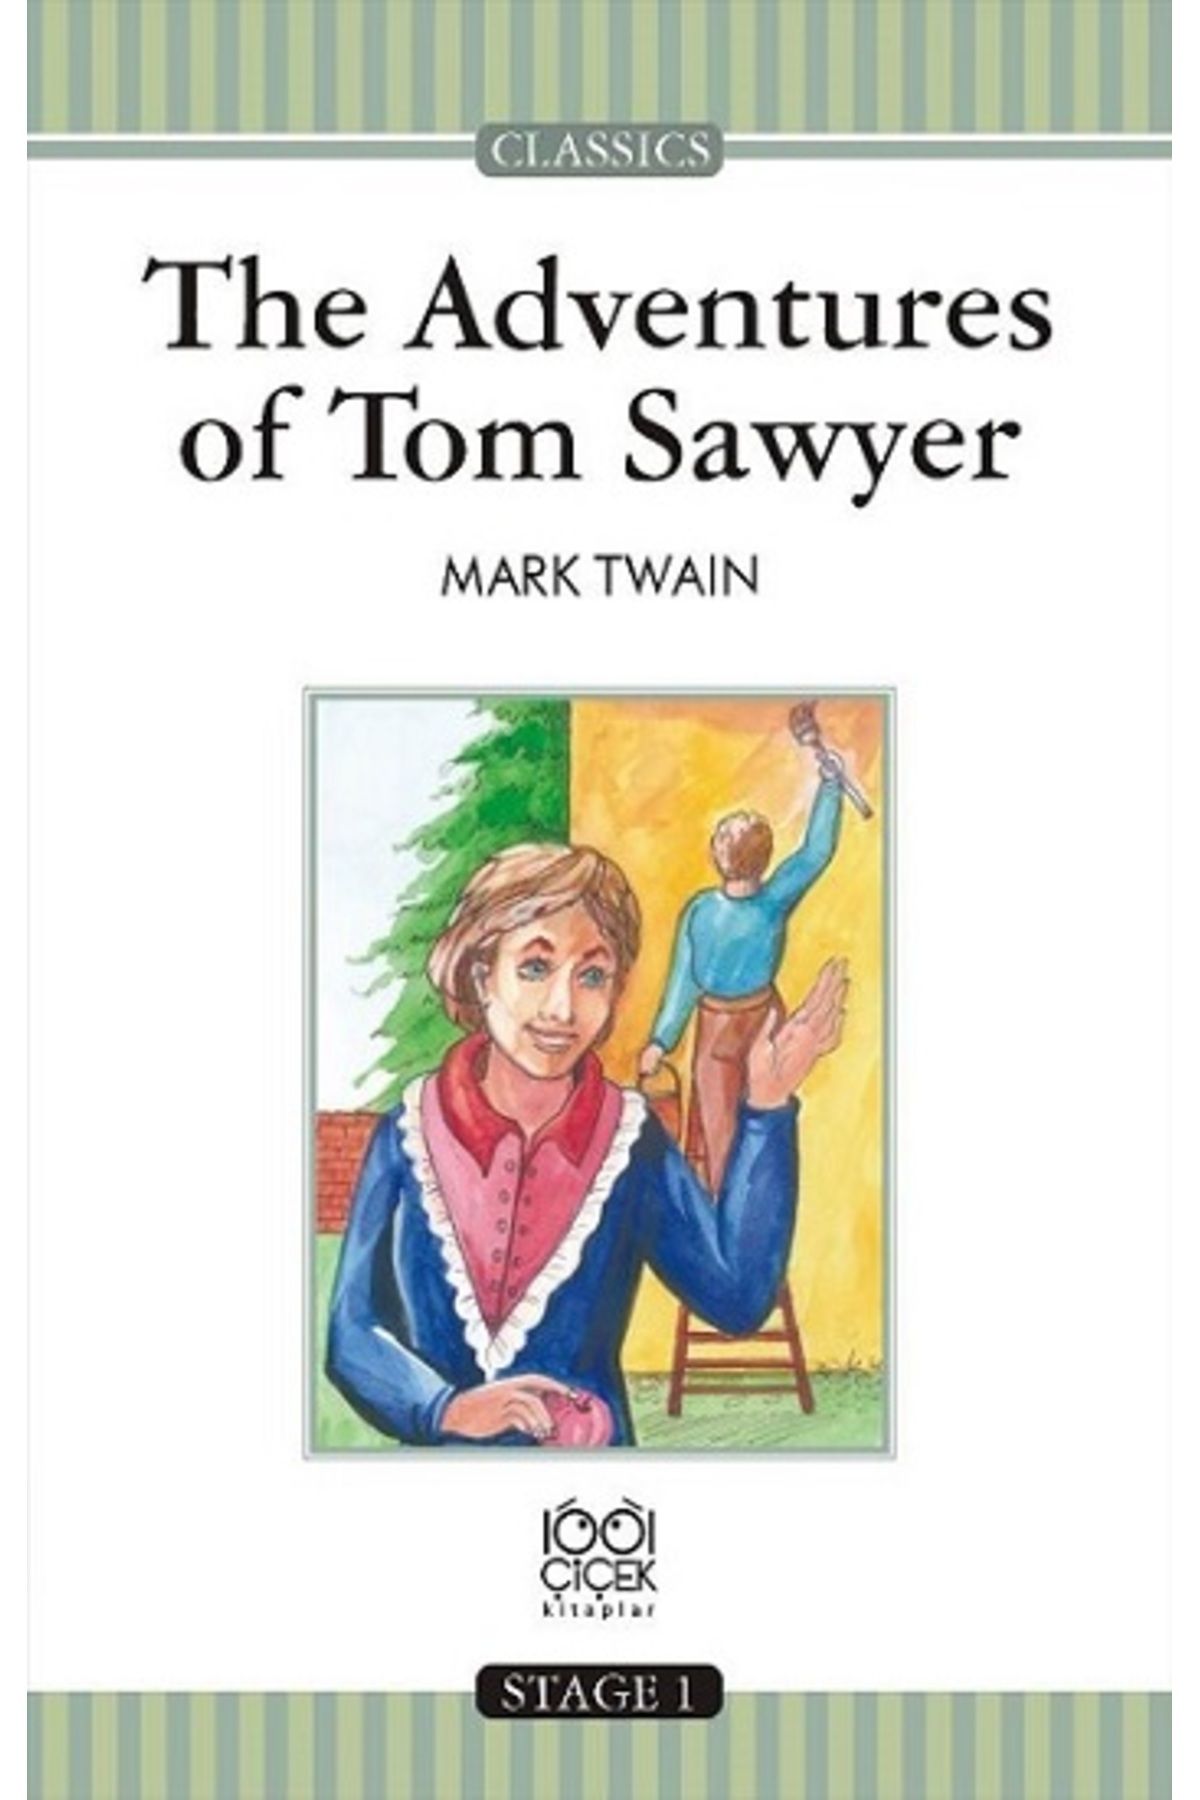 1001 Çiçek Kitaplar The Adventures of Tom Sawyer Stage 1 Books